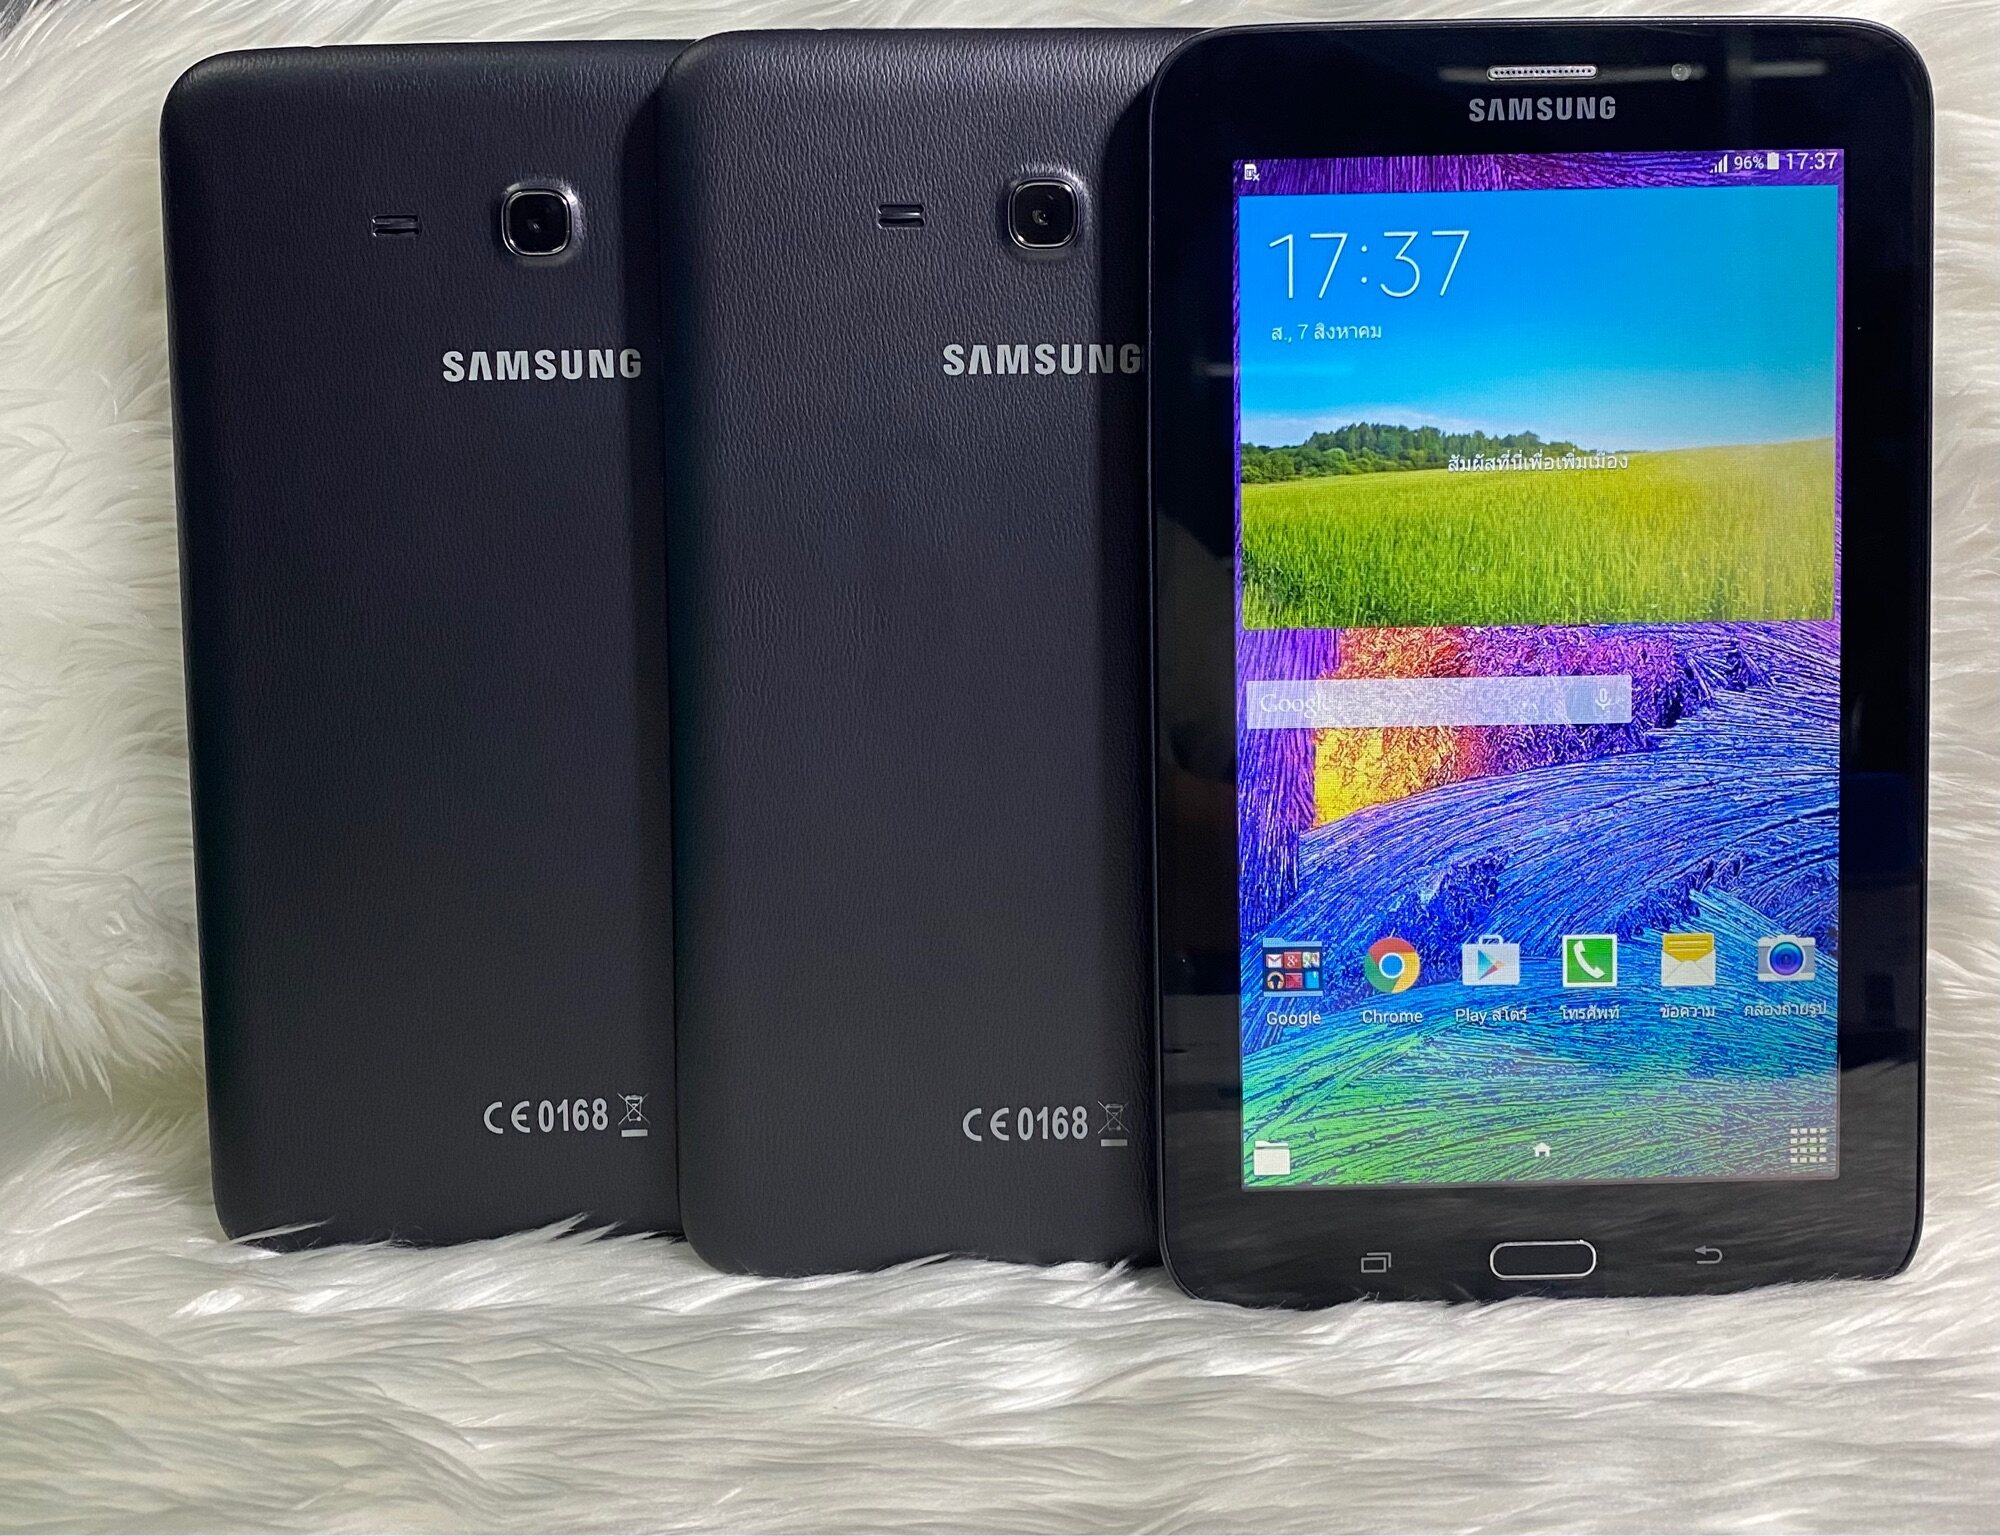 ข้อมูลเกี่ยวกับ Samsung Galaxy Tab 3E แท็บเล็ตมือ-2พร้อมใช้งานเครื่อง​ไม่มีที่ปิดซิม(ฟรีชุดชาร์จ)